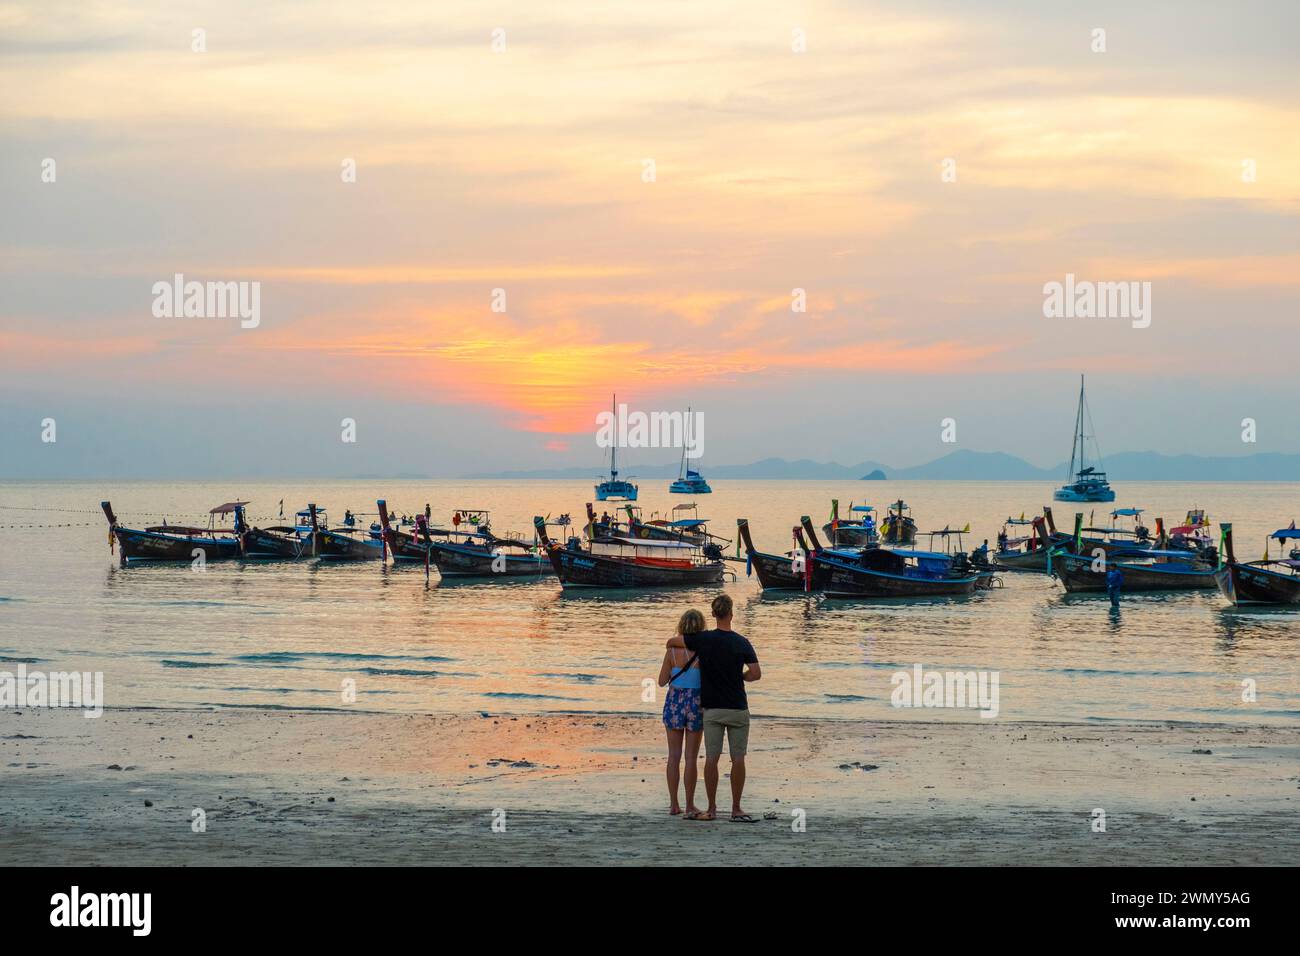 Thailand, Krabi province, West Railay, sunset Stock Photo